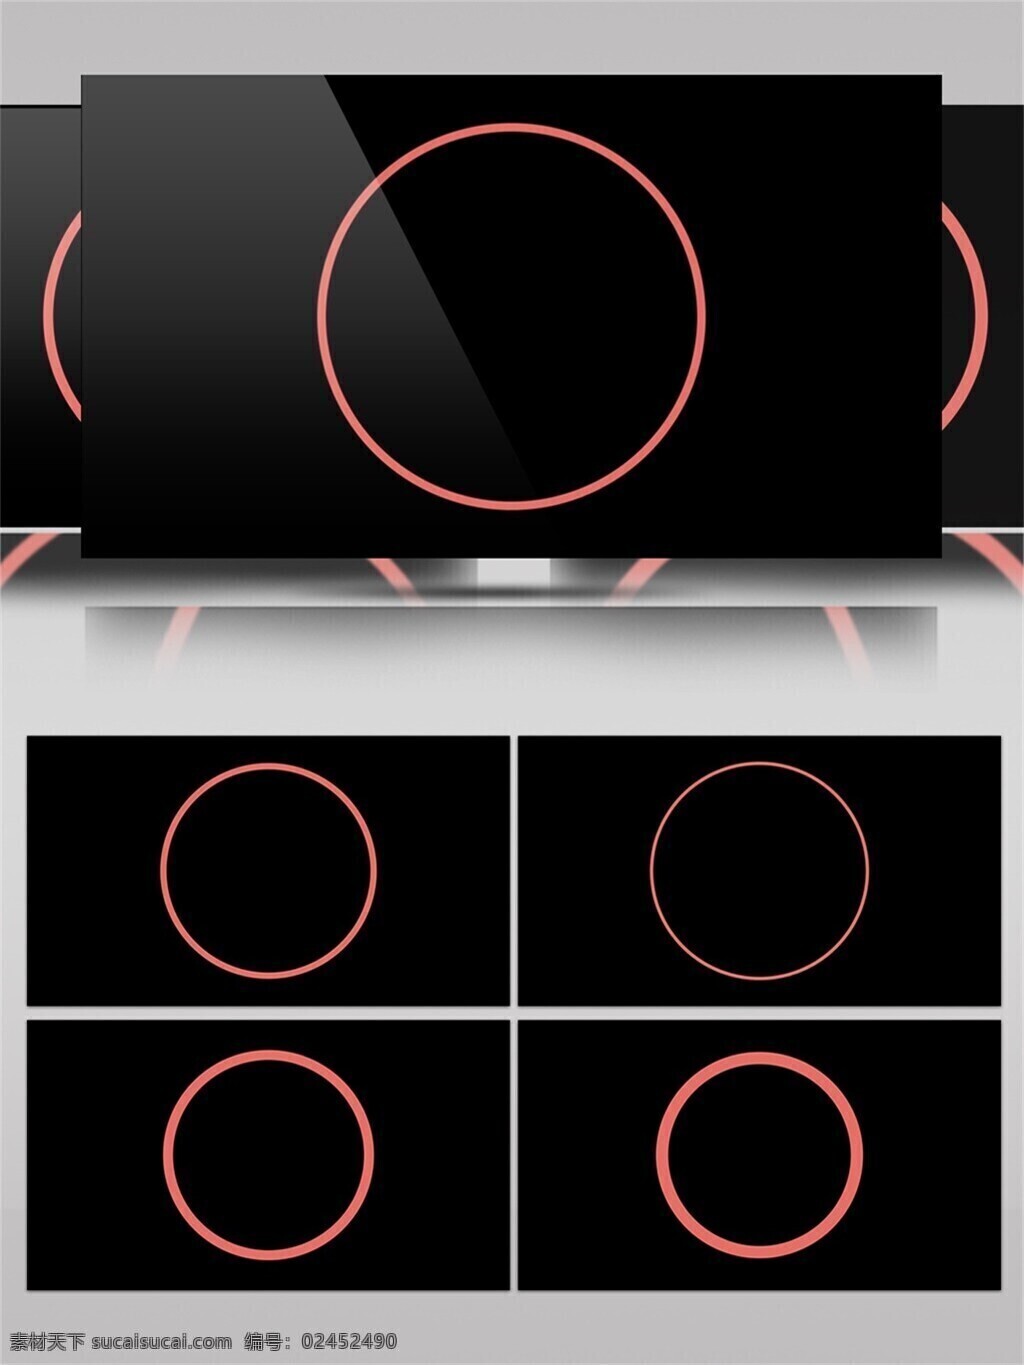 简单 圆环 图形 动画 视频 动态 动感 创意设计 圆圈 变化 图形图案 粗细